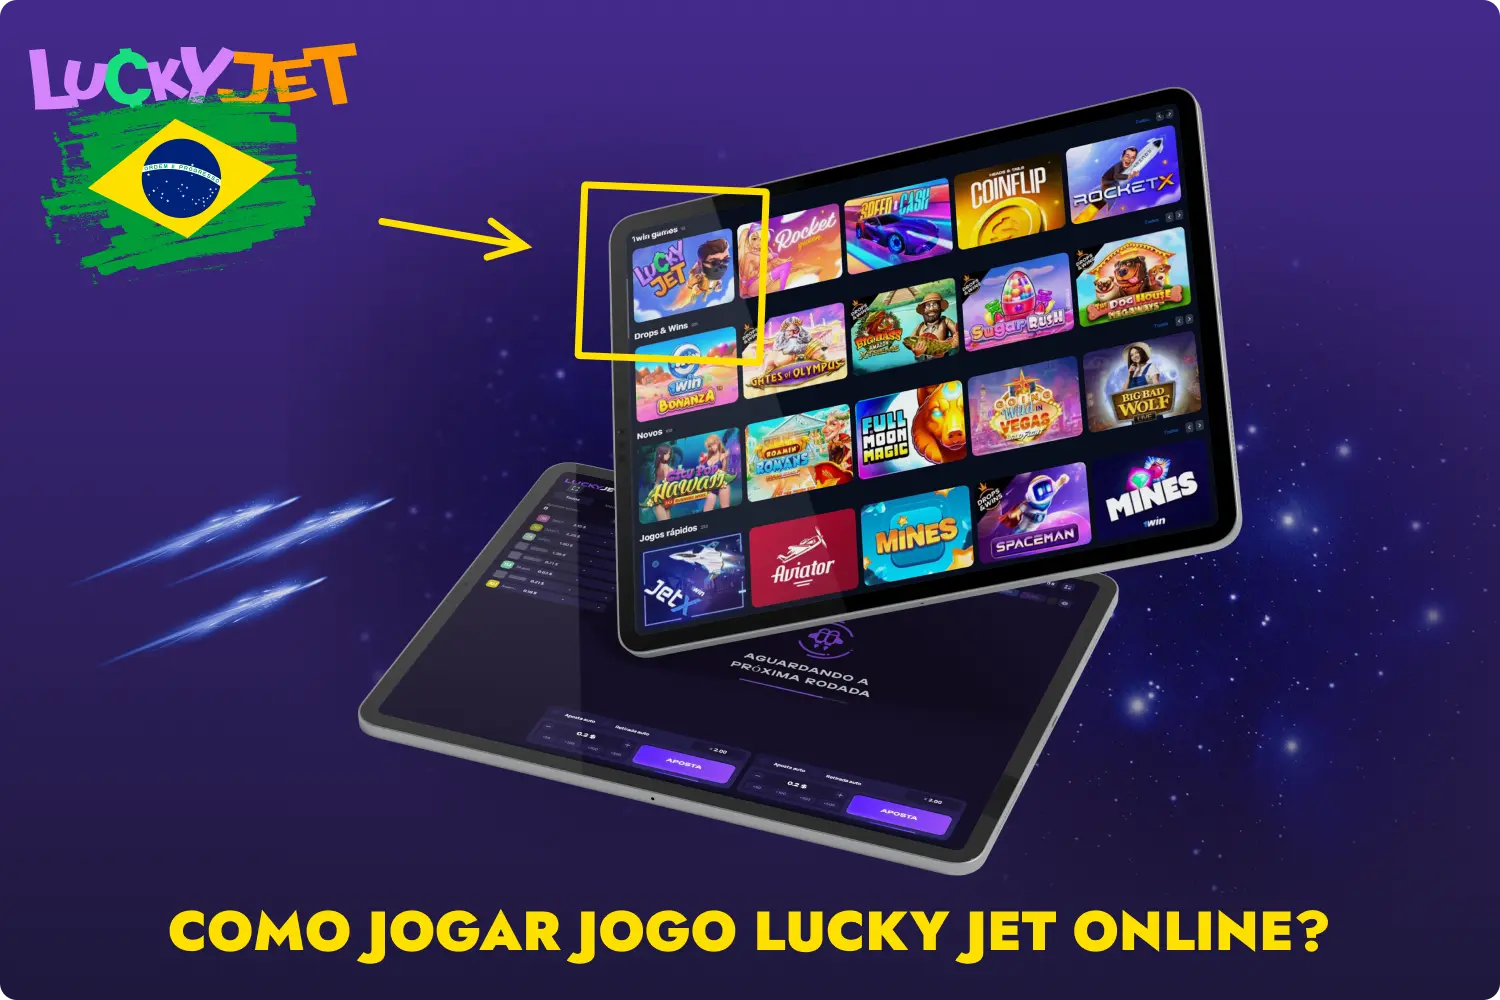 Para jogar Lucky Jet, o utilizador tem de se registar no site 1win e encontrar o jogo na secção de casino